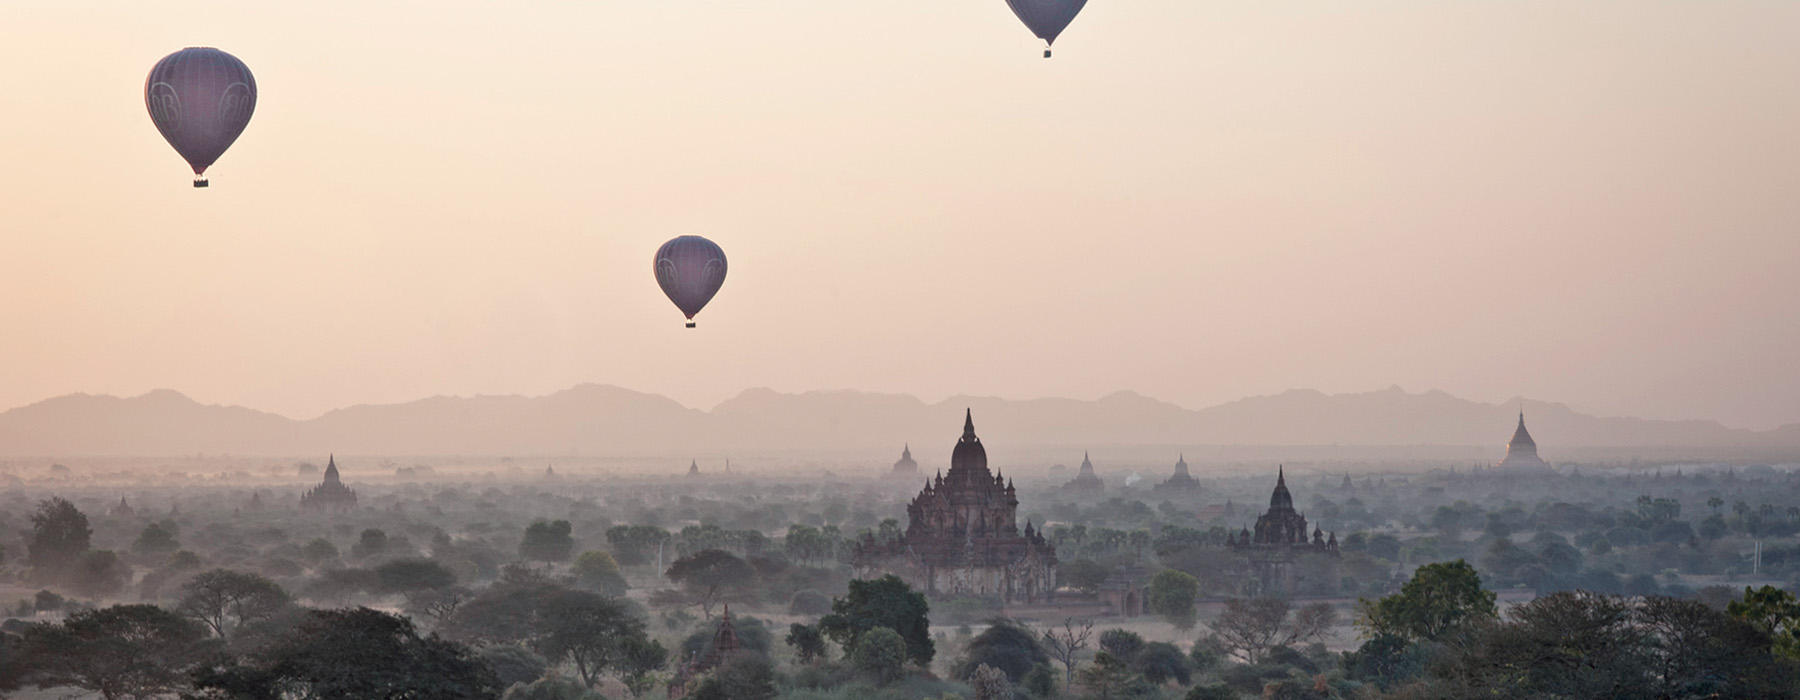 Je voyage éthique Birmanie